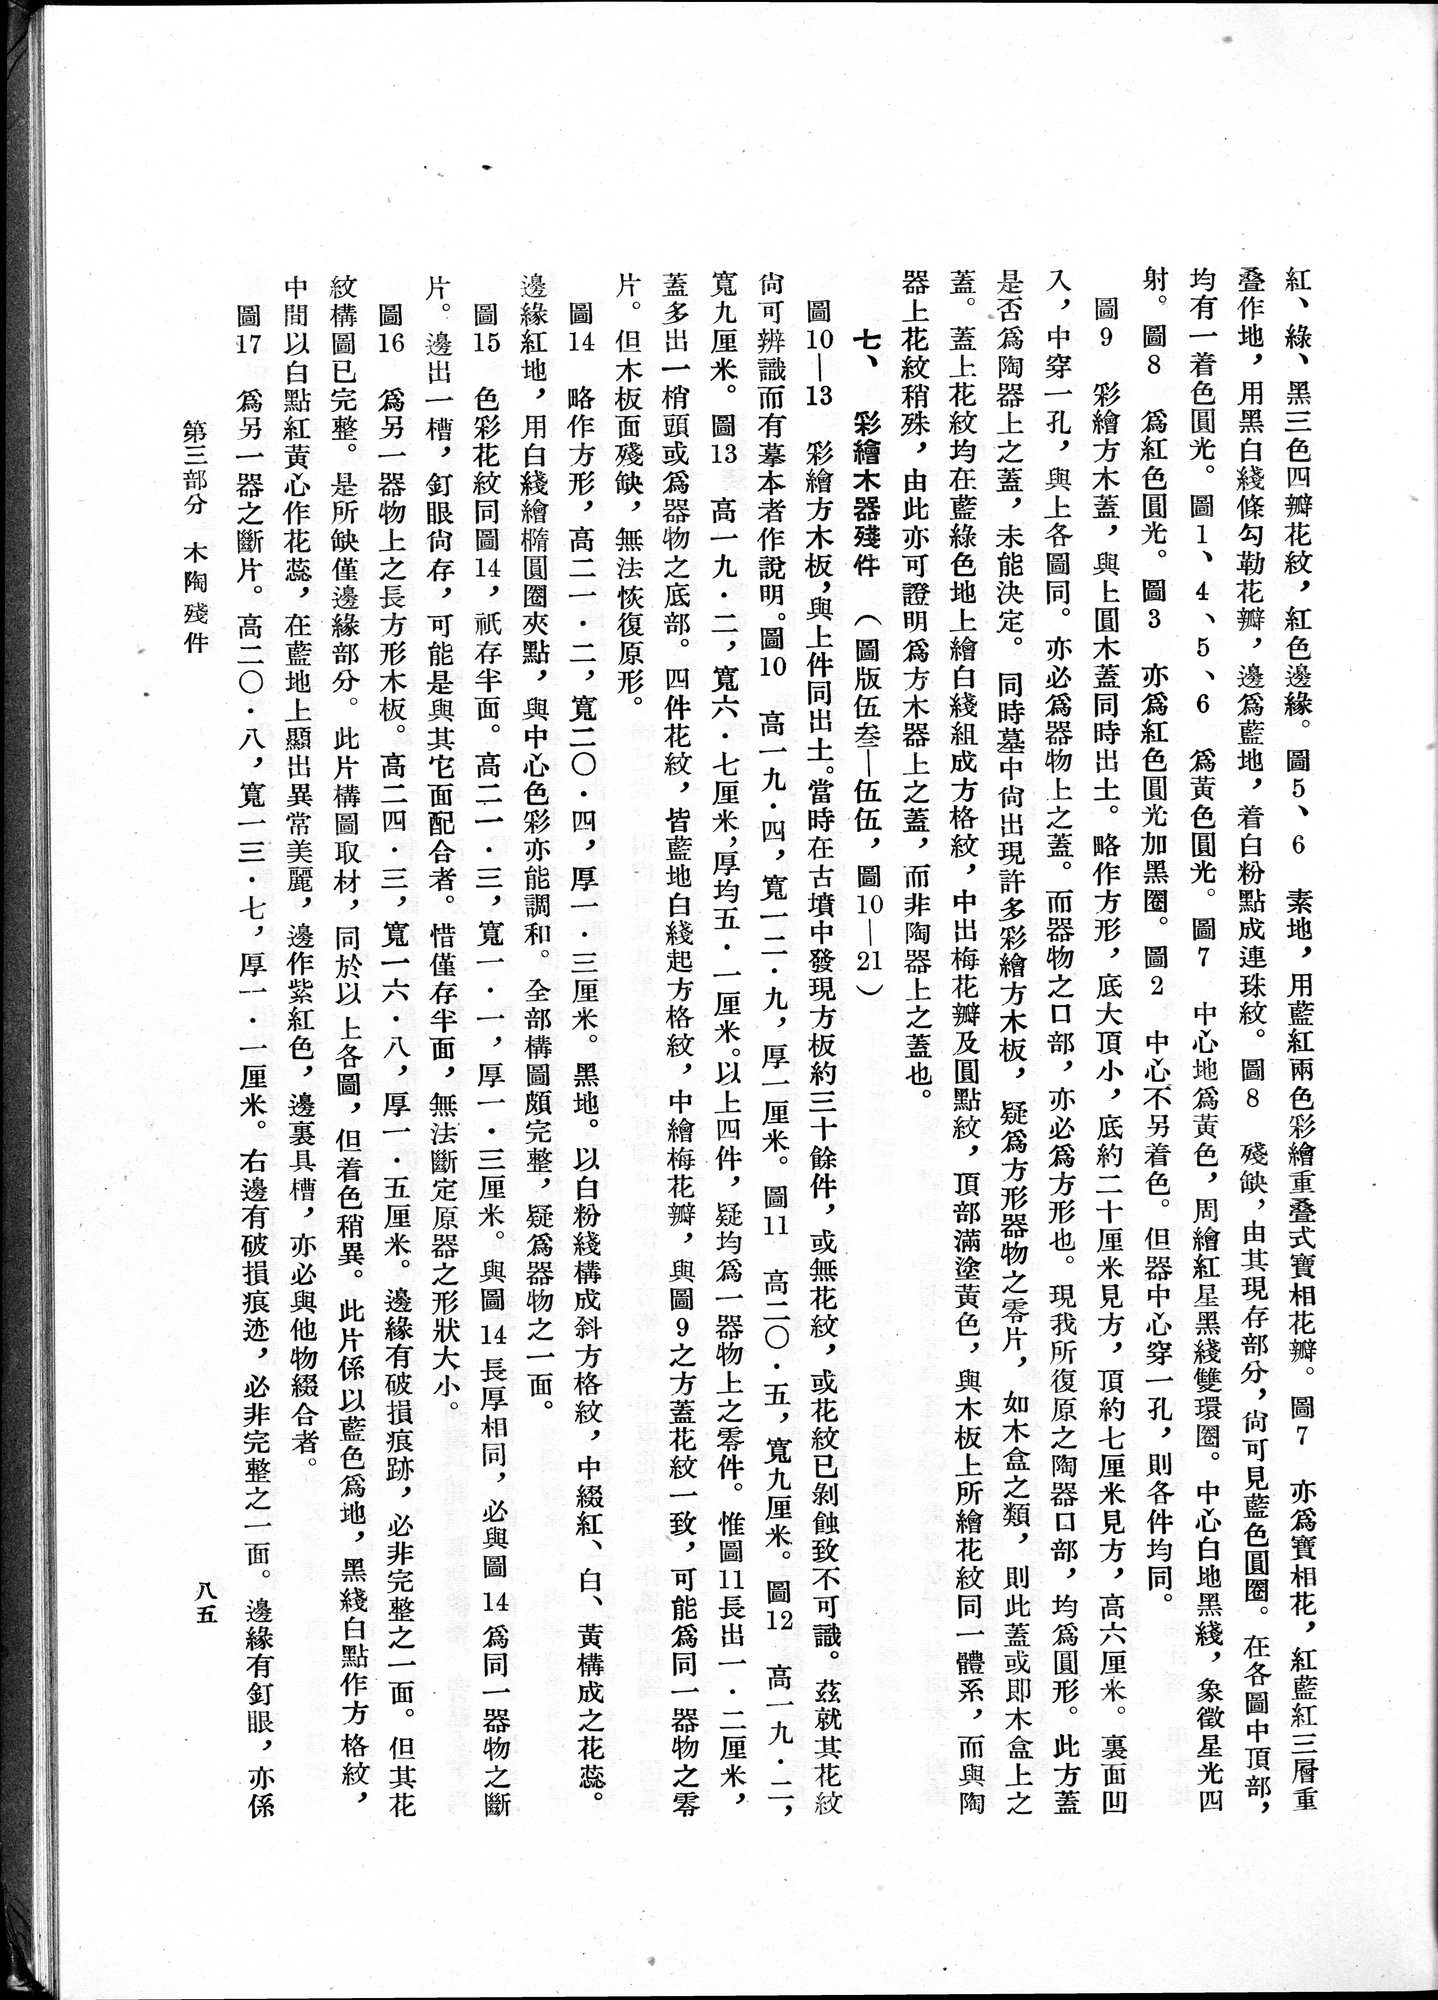 塔里木盆地考古記 : vol.1 / Page 149 (Grayscale High Resolution Image)